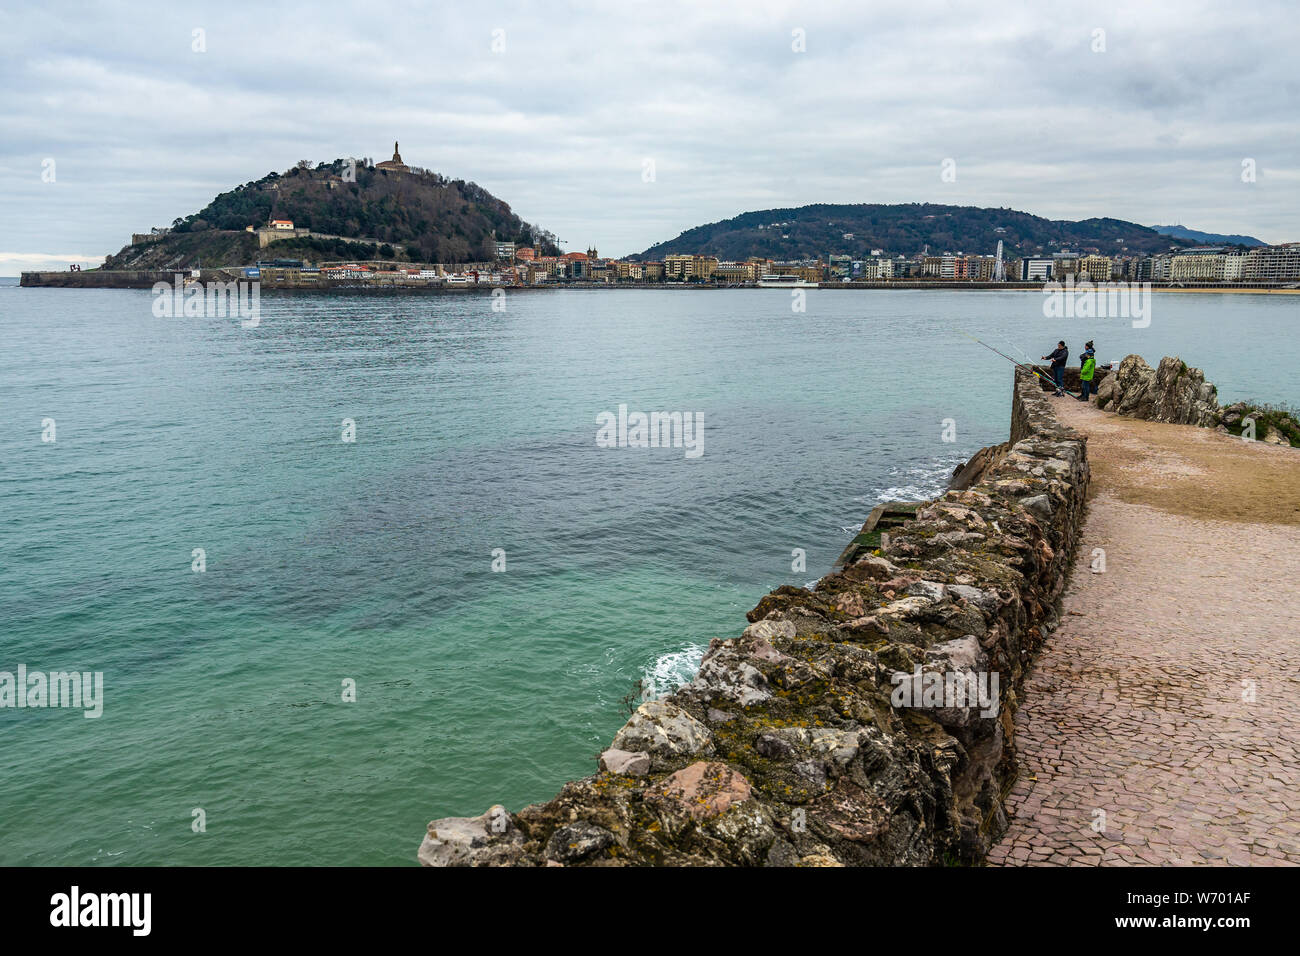 Vue de la baie de La Concha et Monte Urgull à San Sebastian au cours de l'hiver, Pays Basque, Espagne Banque D'Images